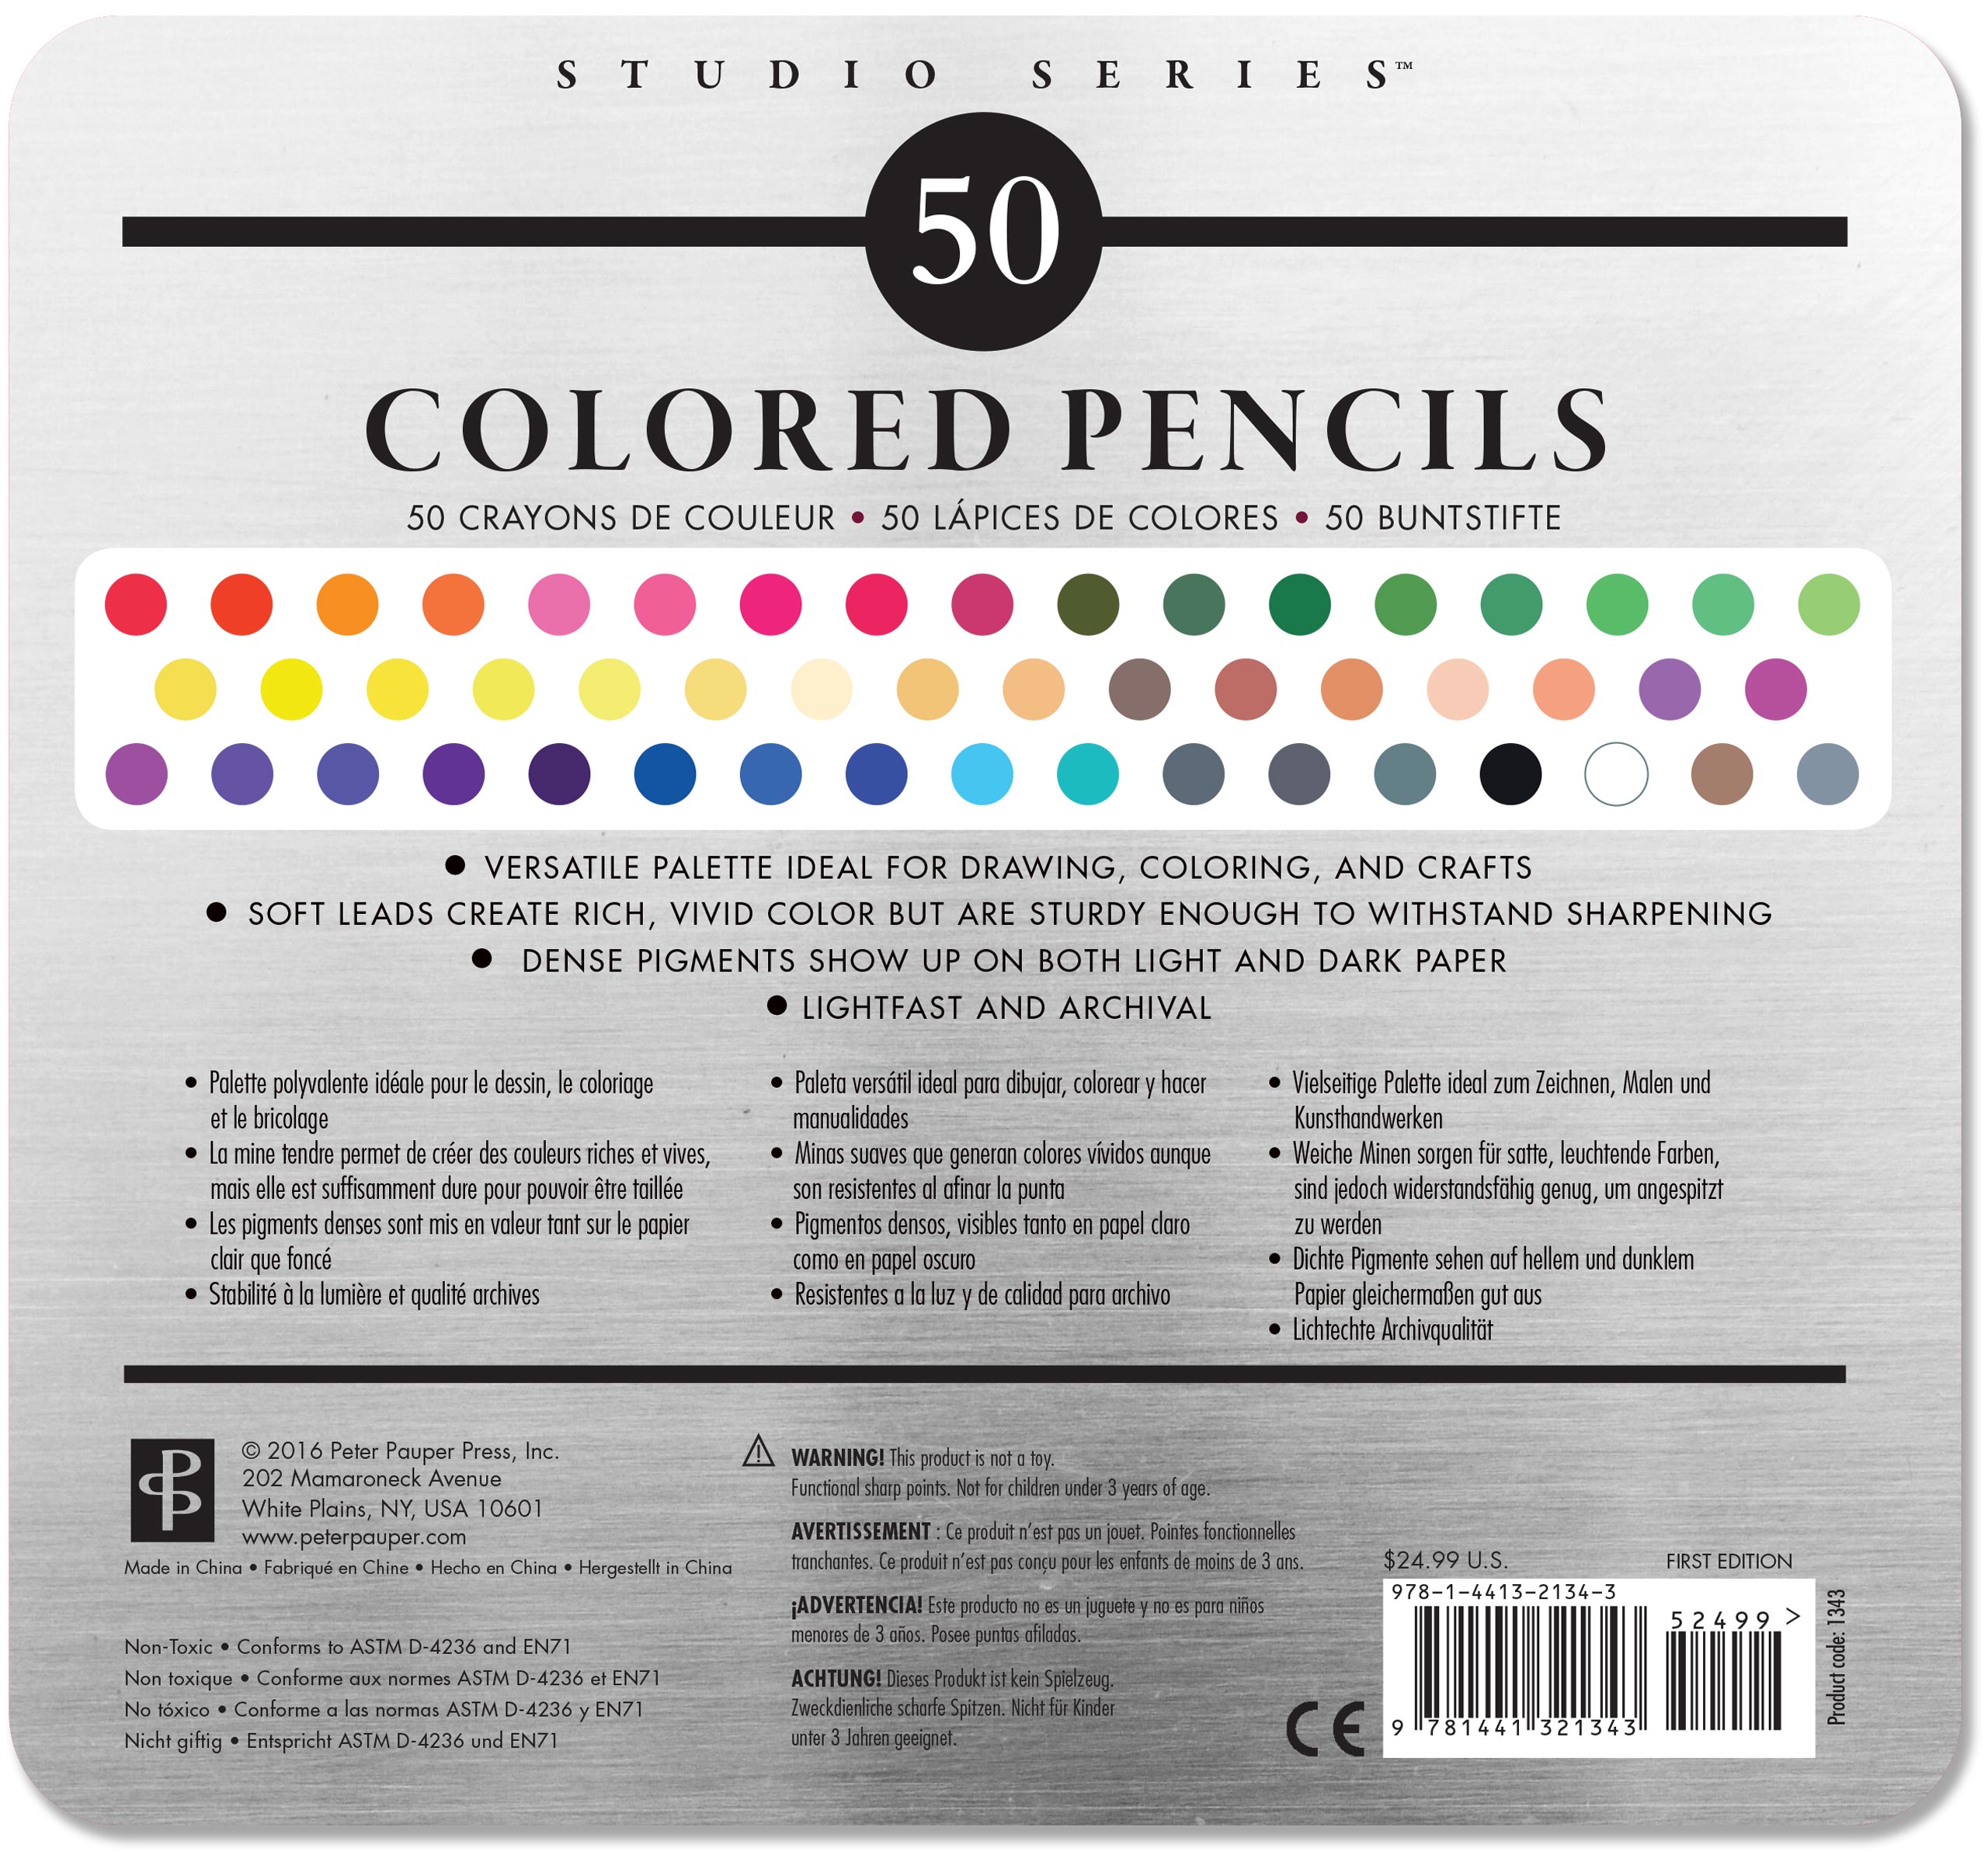 9 crayons de couleur 3 en 1